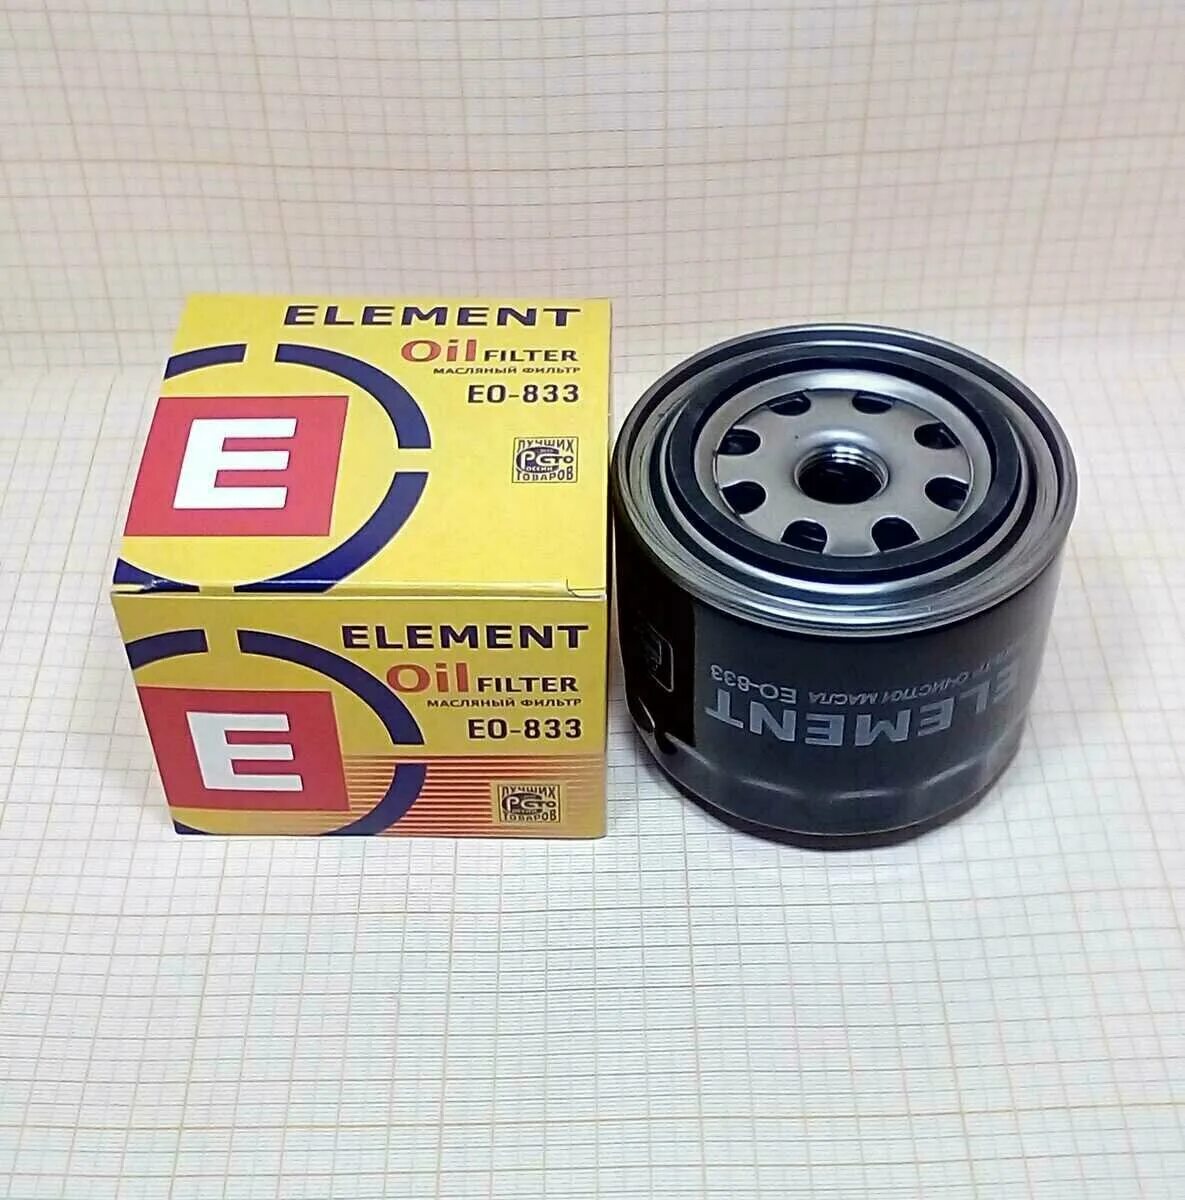 Масляные элементы. Фильтр масляный 2105 (Ео-833). EO-847 фильтр масляный element. Элемент масляный ВАЗ-2105. Фильтр ВАЗ 2105 Vic.